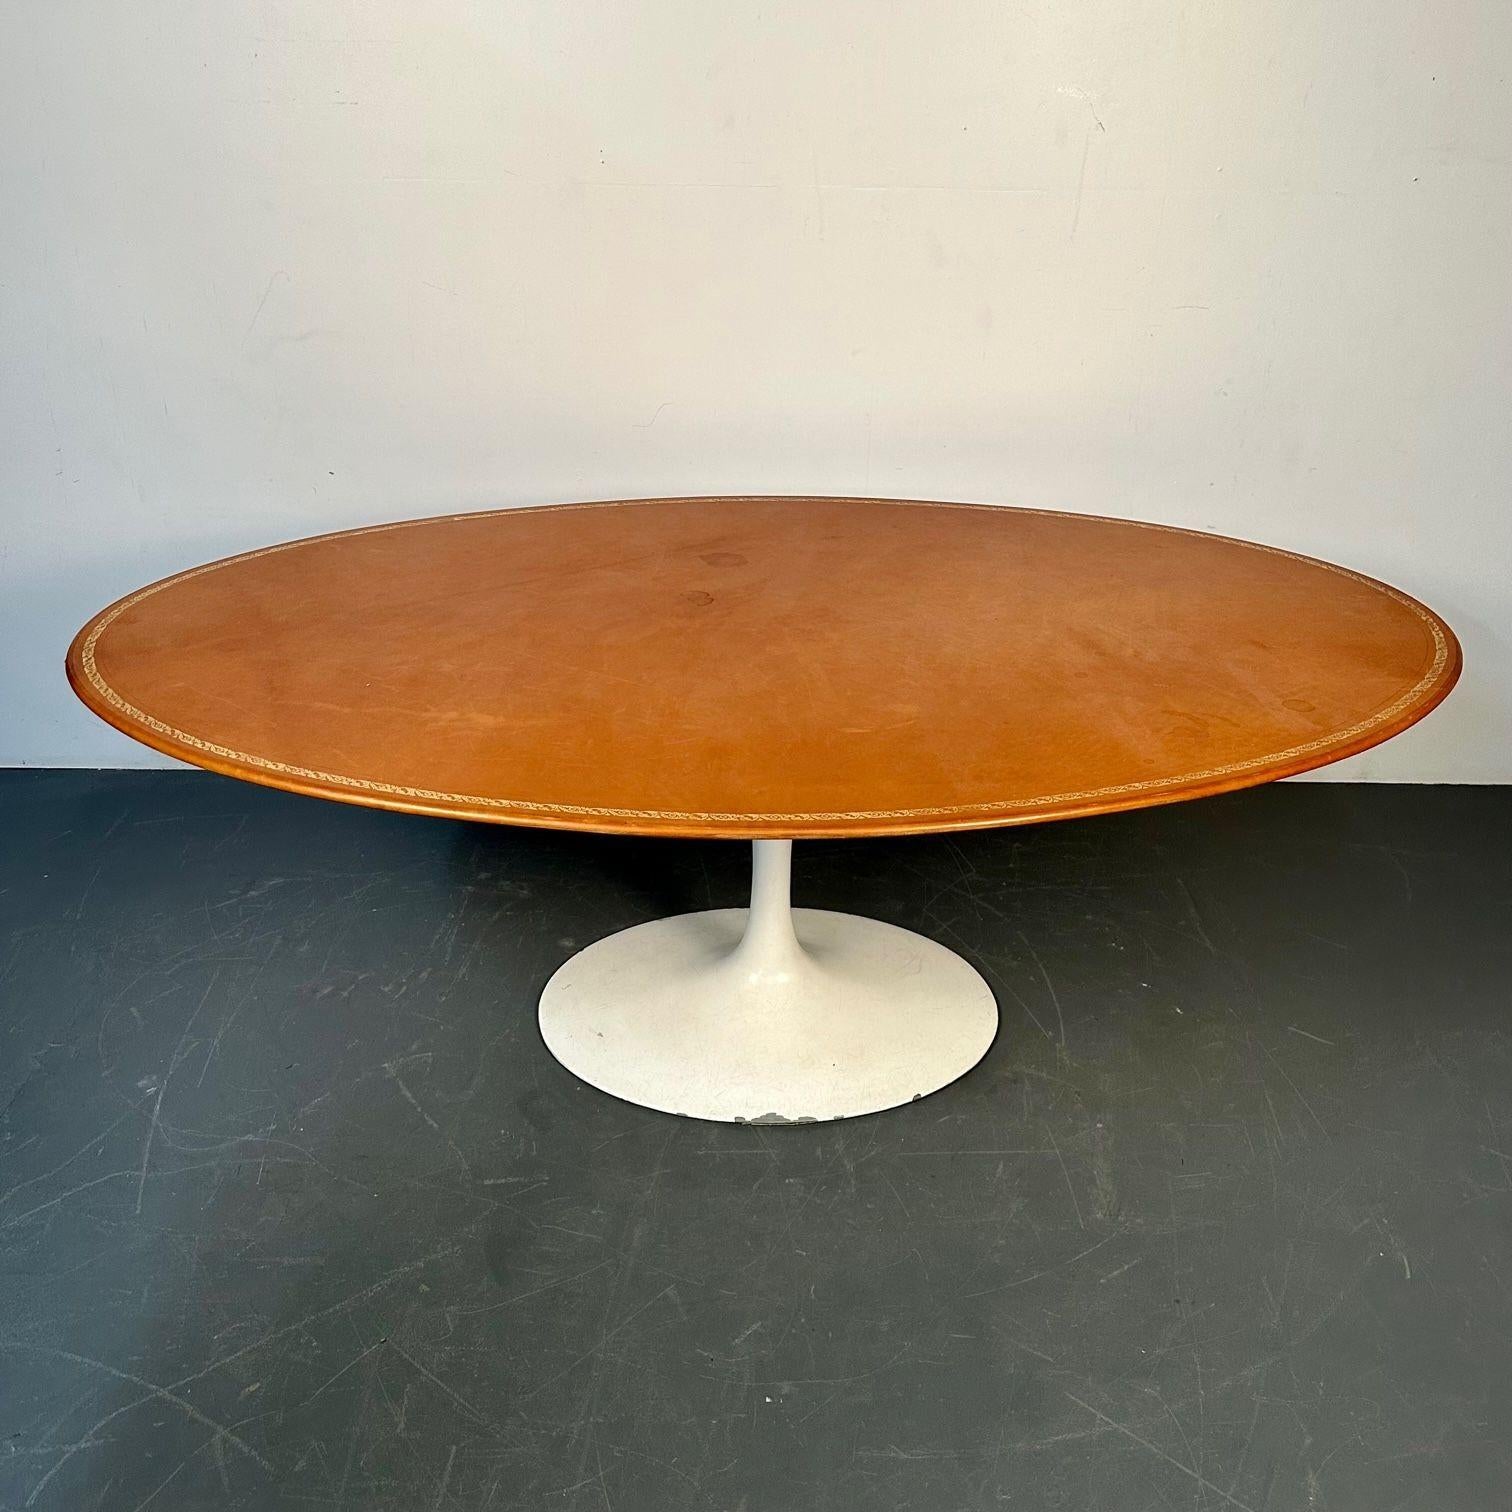 Aluminum Eero Saarinen Mid-Century Modern Tulip Dining Table, Leather Top, Miles Redd